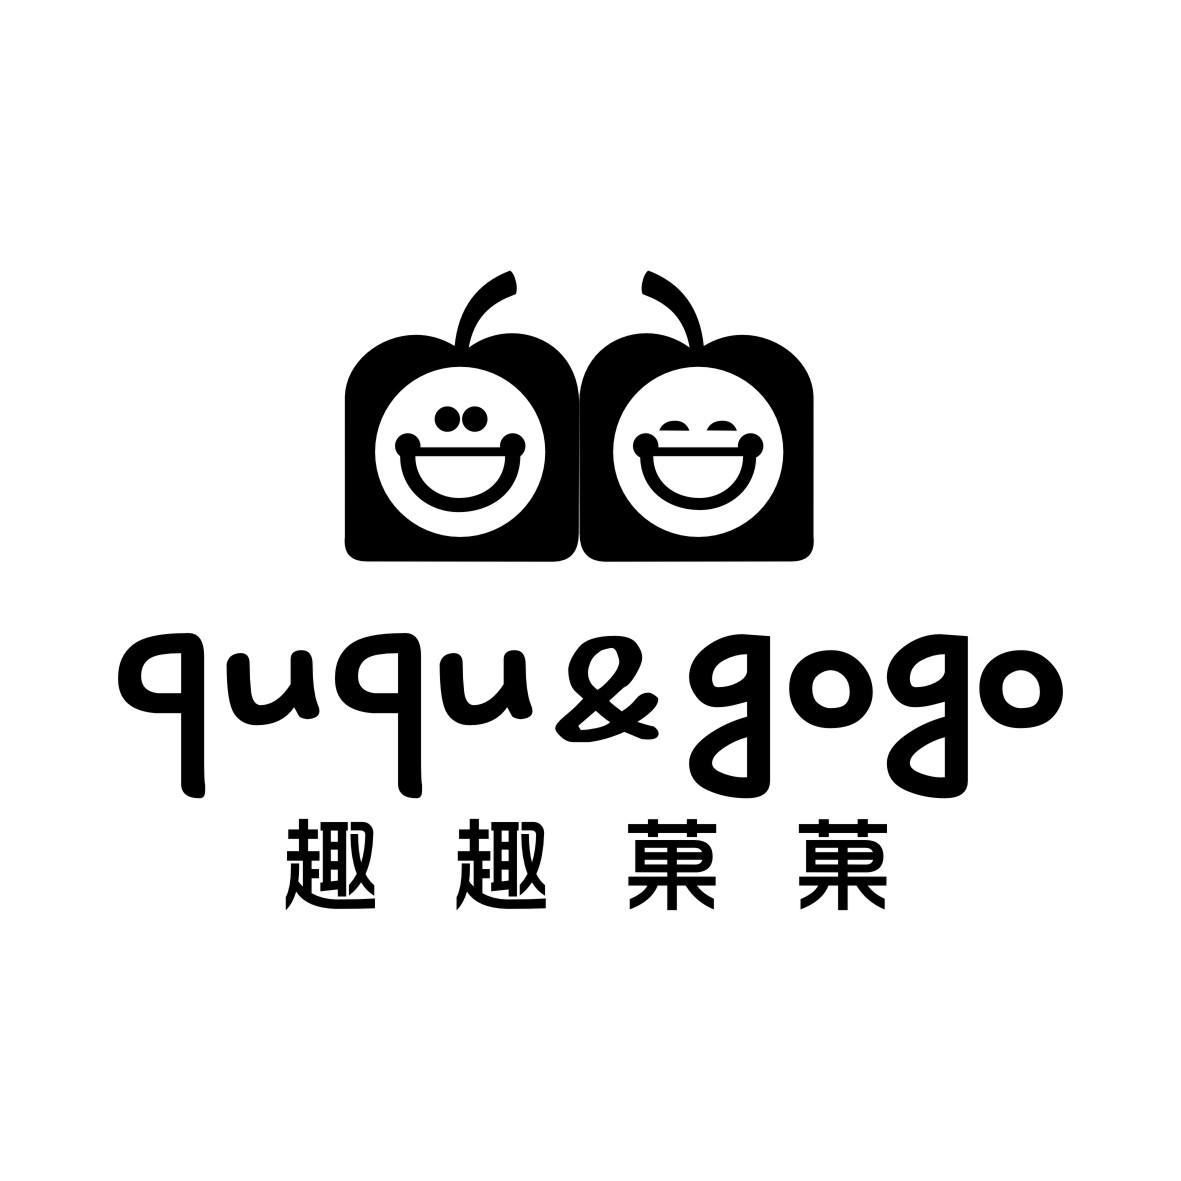 趣趣菓菓QUQU&GOGO+图形